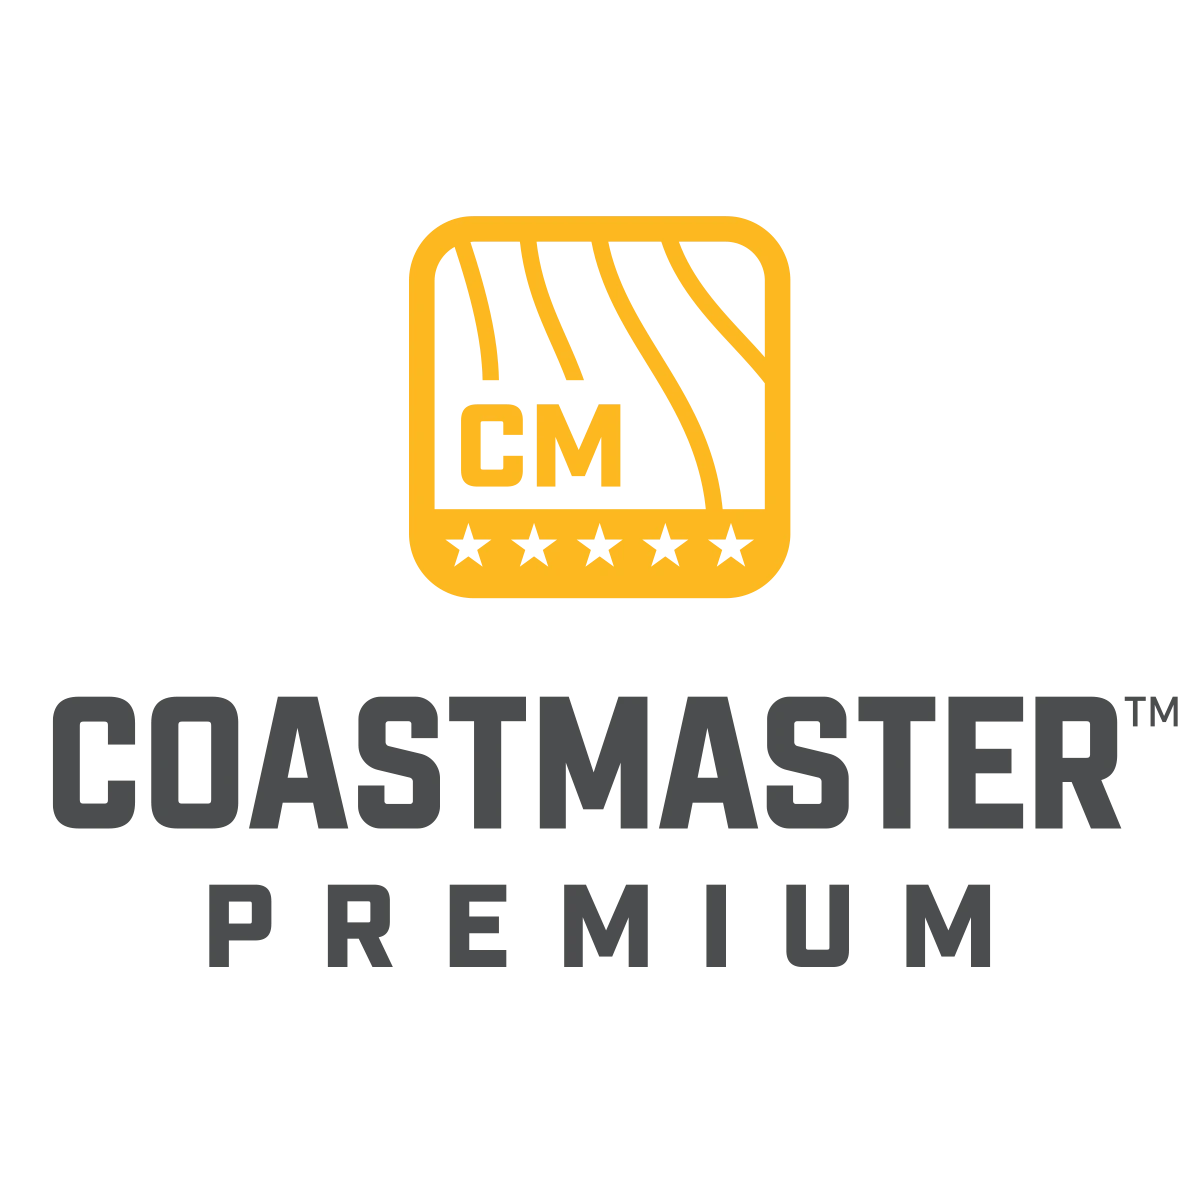 CoastMaster Premium